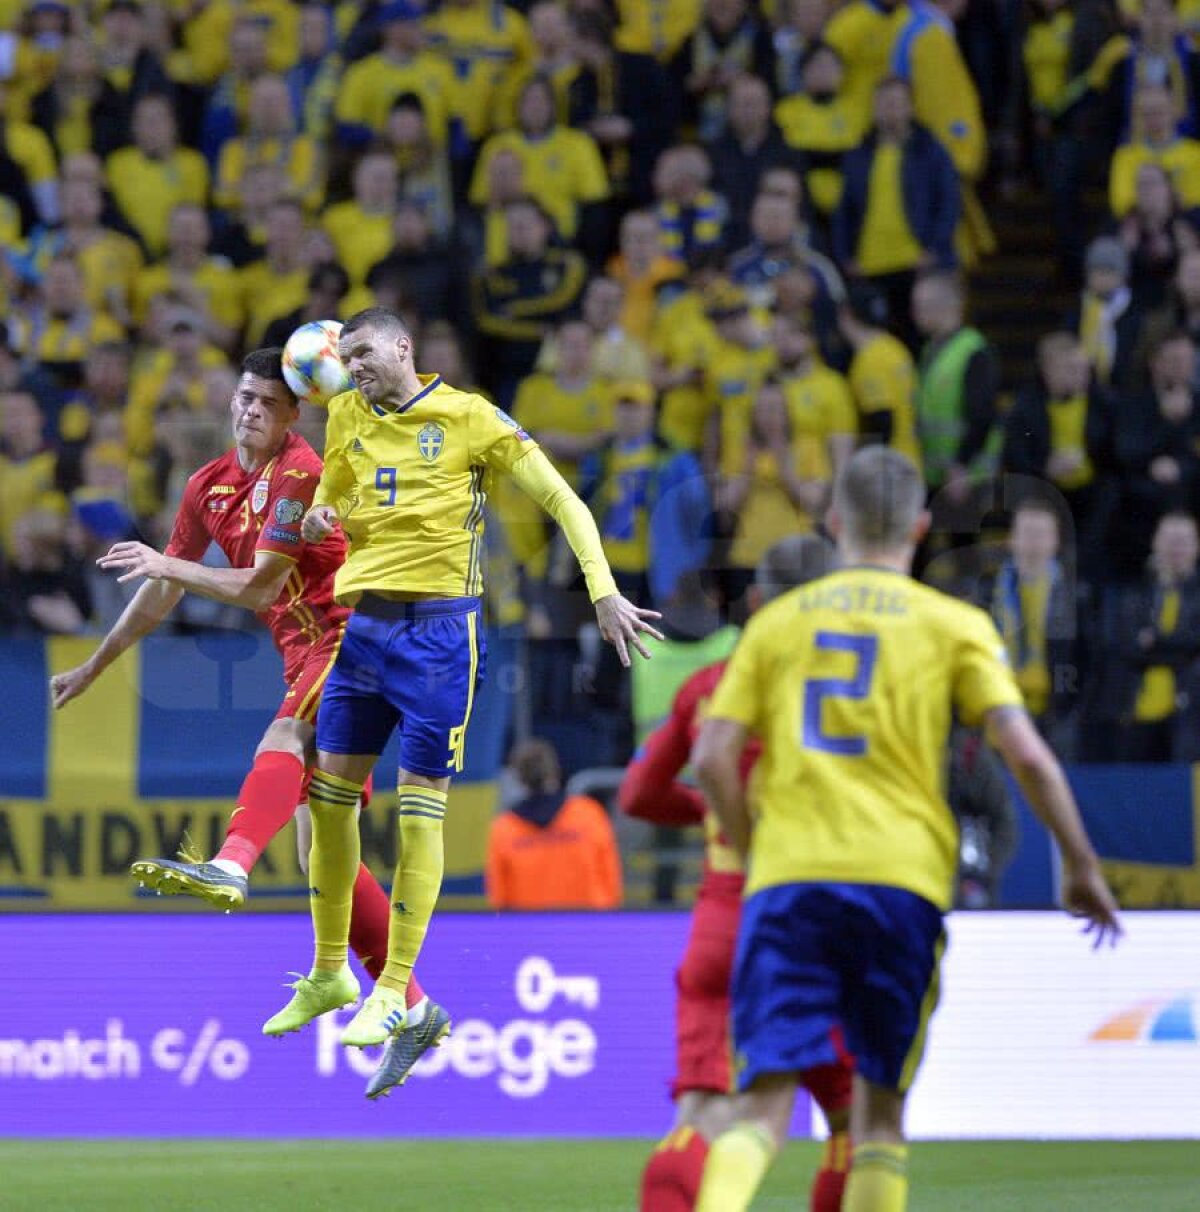 SUEDIA - ROMÂNIA 2-1 » Debut de coșmar: România pierde cu Suedia, în primul meci din preliminariile EURO 2020